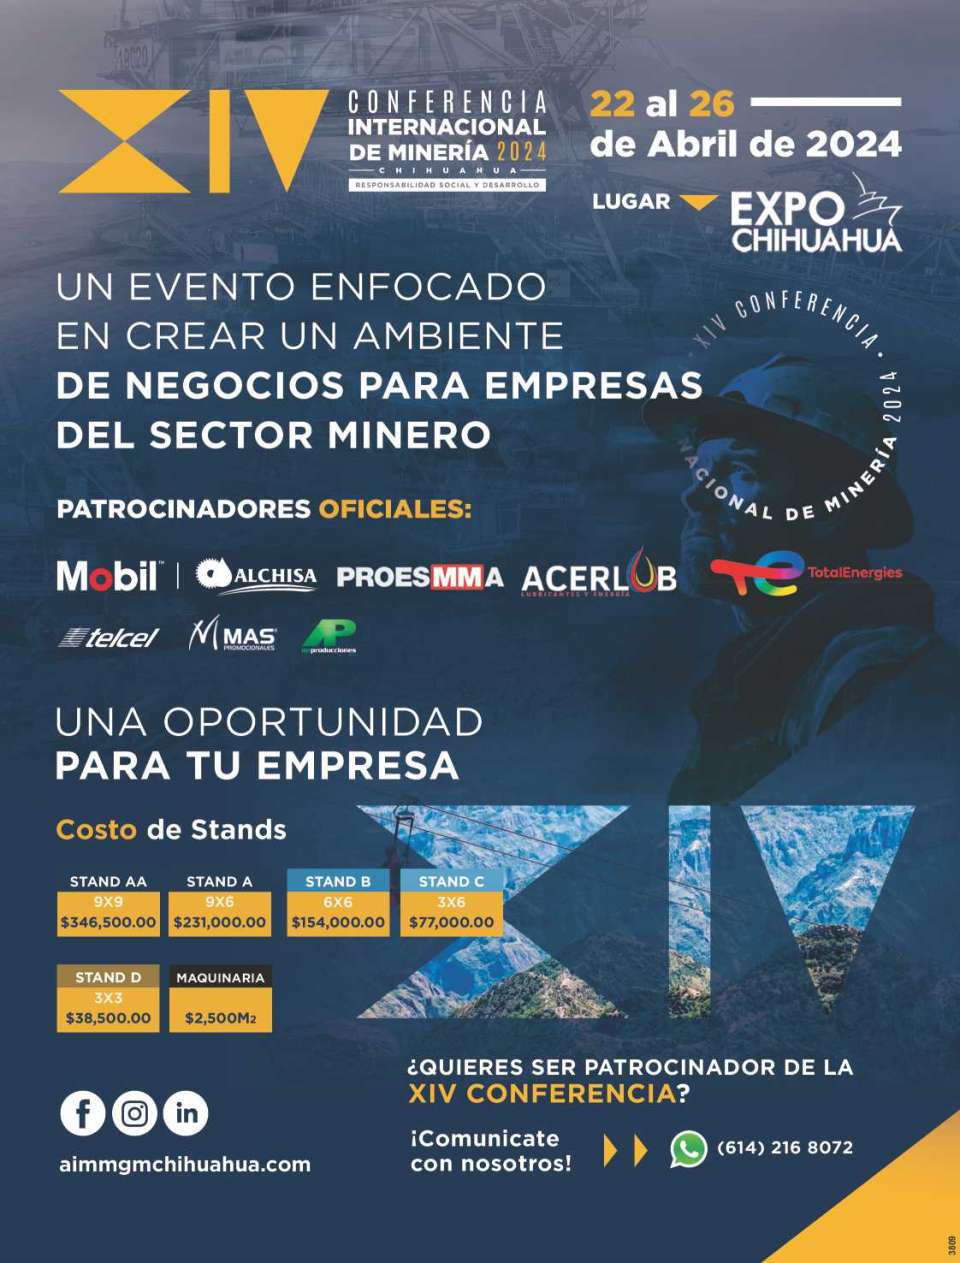 Conferencia y exposicion de maquinaria y productos para Mineria, del 22 al 26 de Abril del 2024, en Chihuahua, Chih.